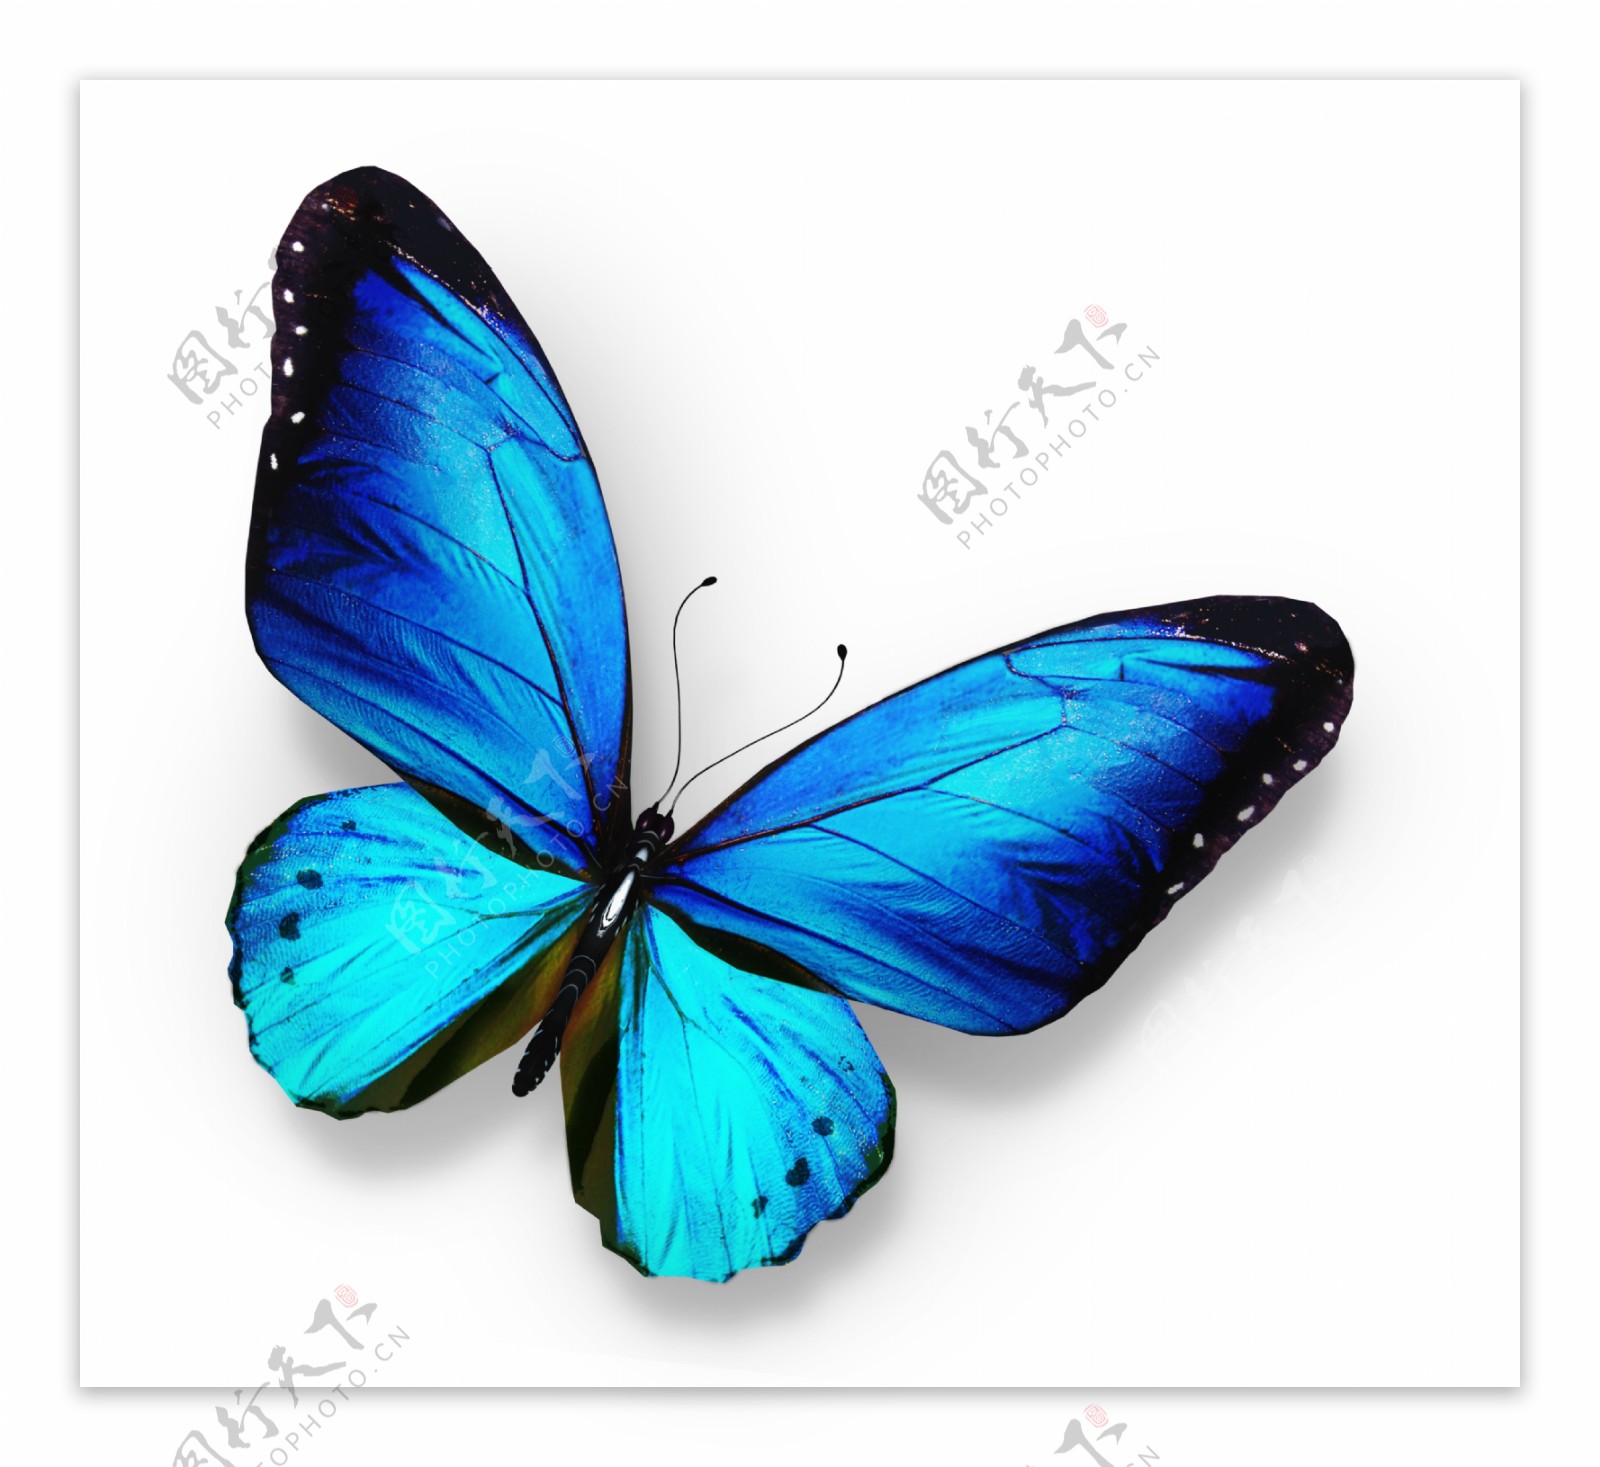 漂亮蓝色蝴蝶图片